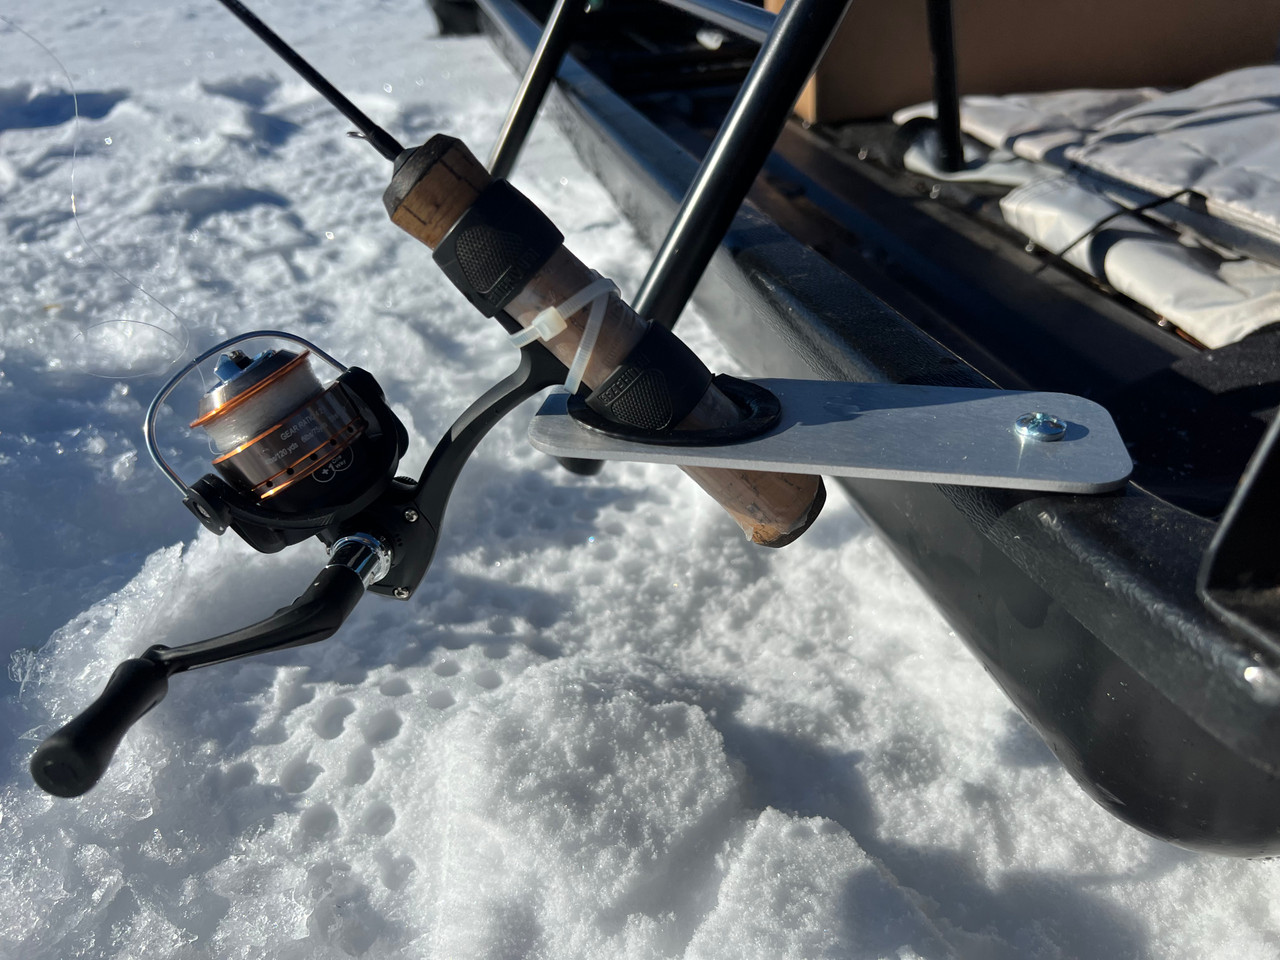  Ice Fishing Pole Holder